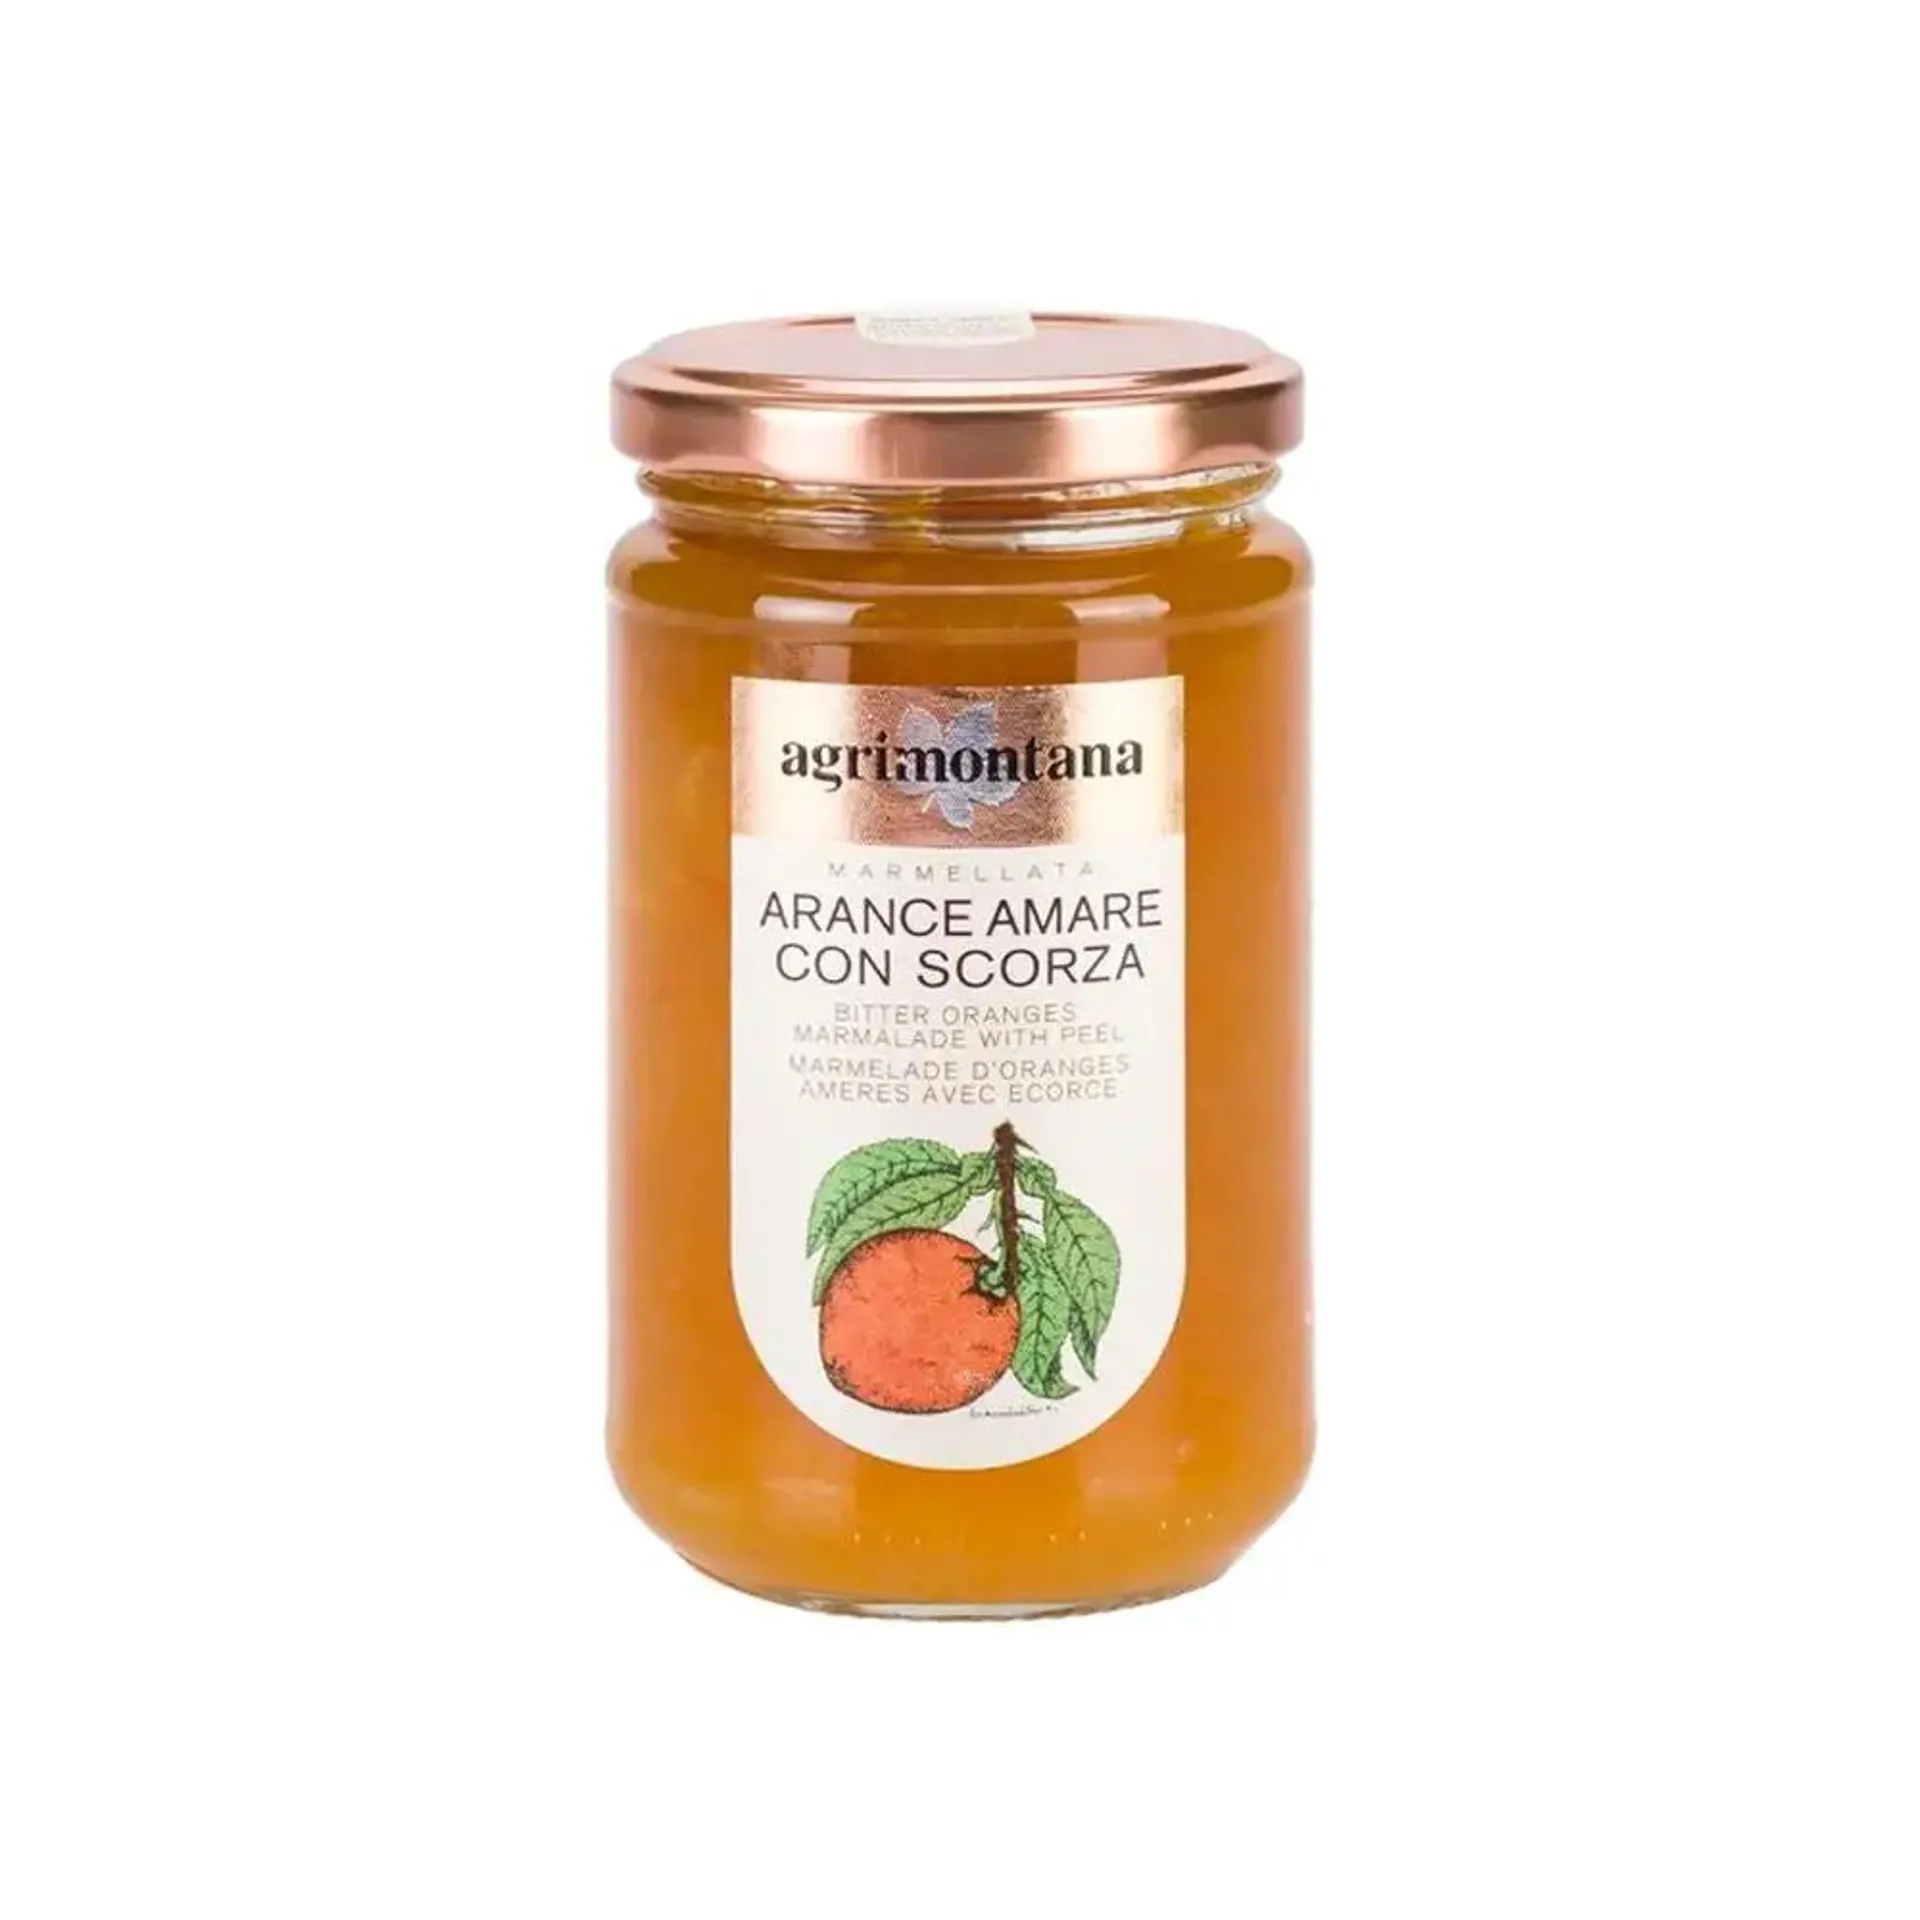 Agrimontana Confettura di arance amare gr. 350